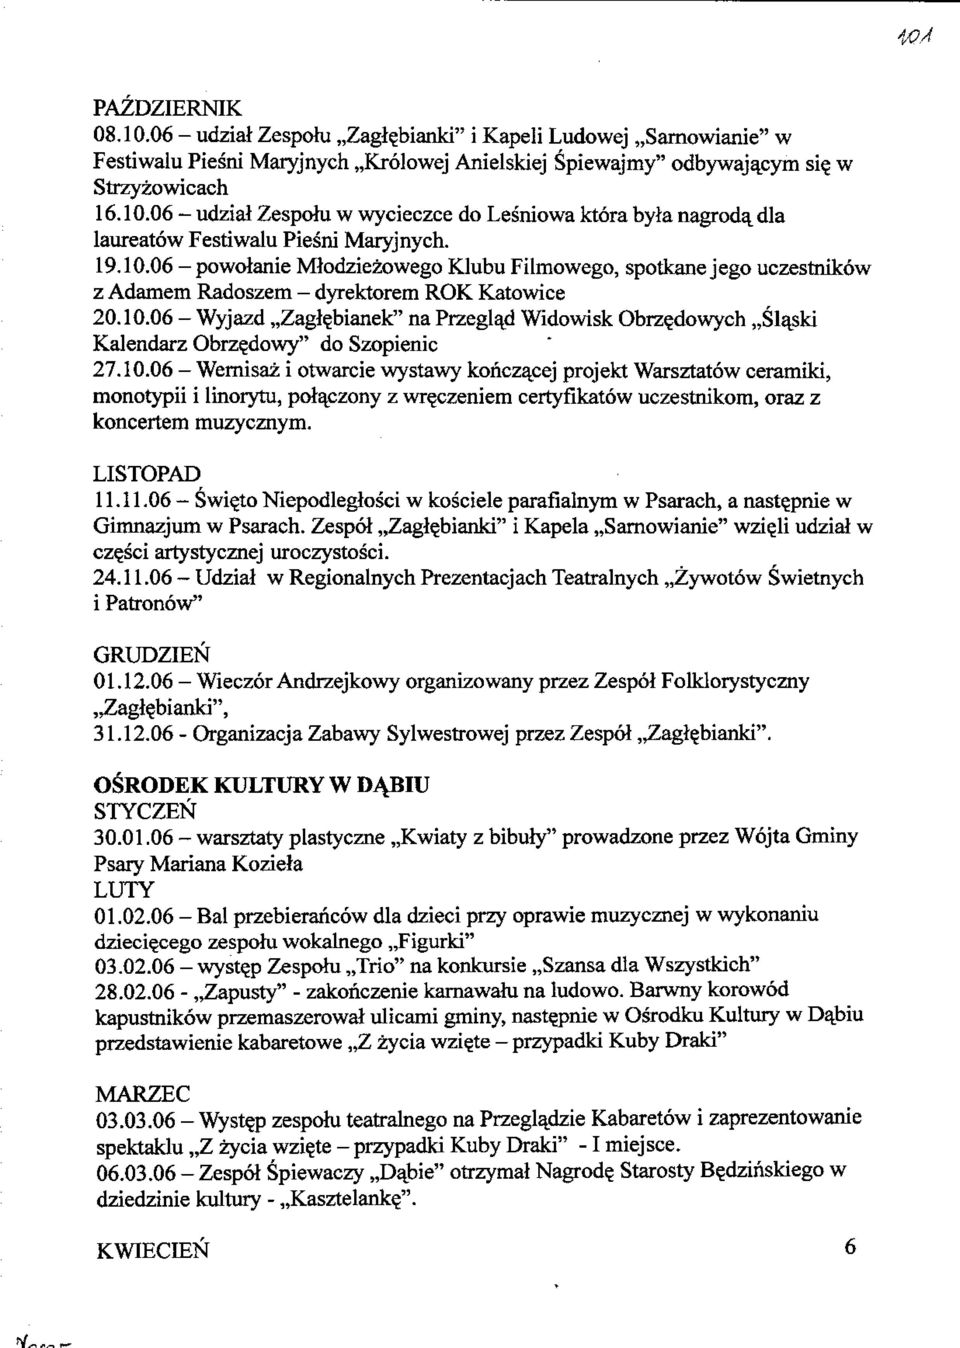 10.06 - Wernisaz i otwarcie wystawy kohczacej projekt Warsztatow ceramiki, monotypii i linorytu, polaczony z wr^czeniem certyfikatow uczestnikom, oraz z koncertem muzycznym. LISTOPAD r 11.